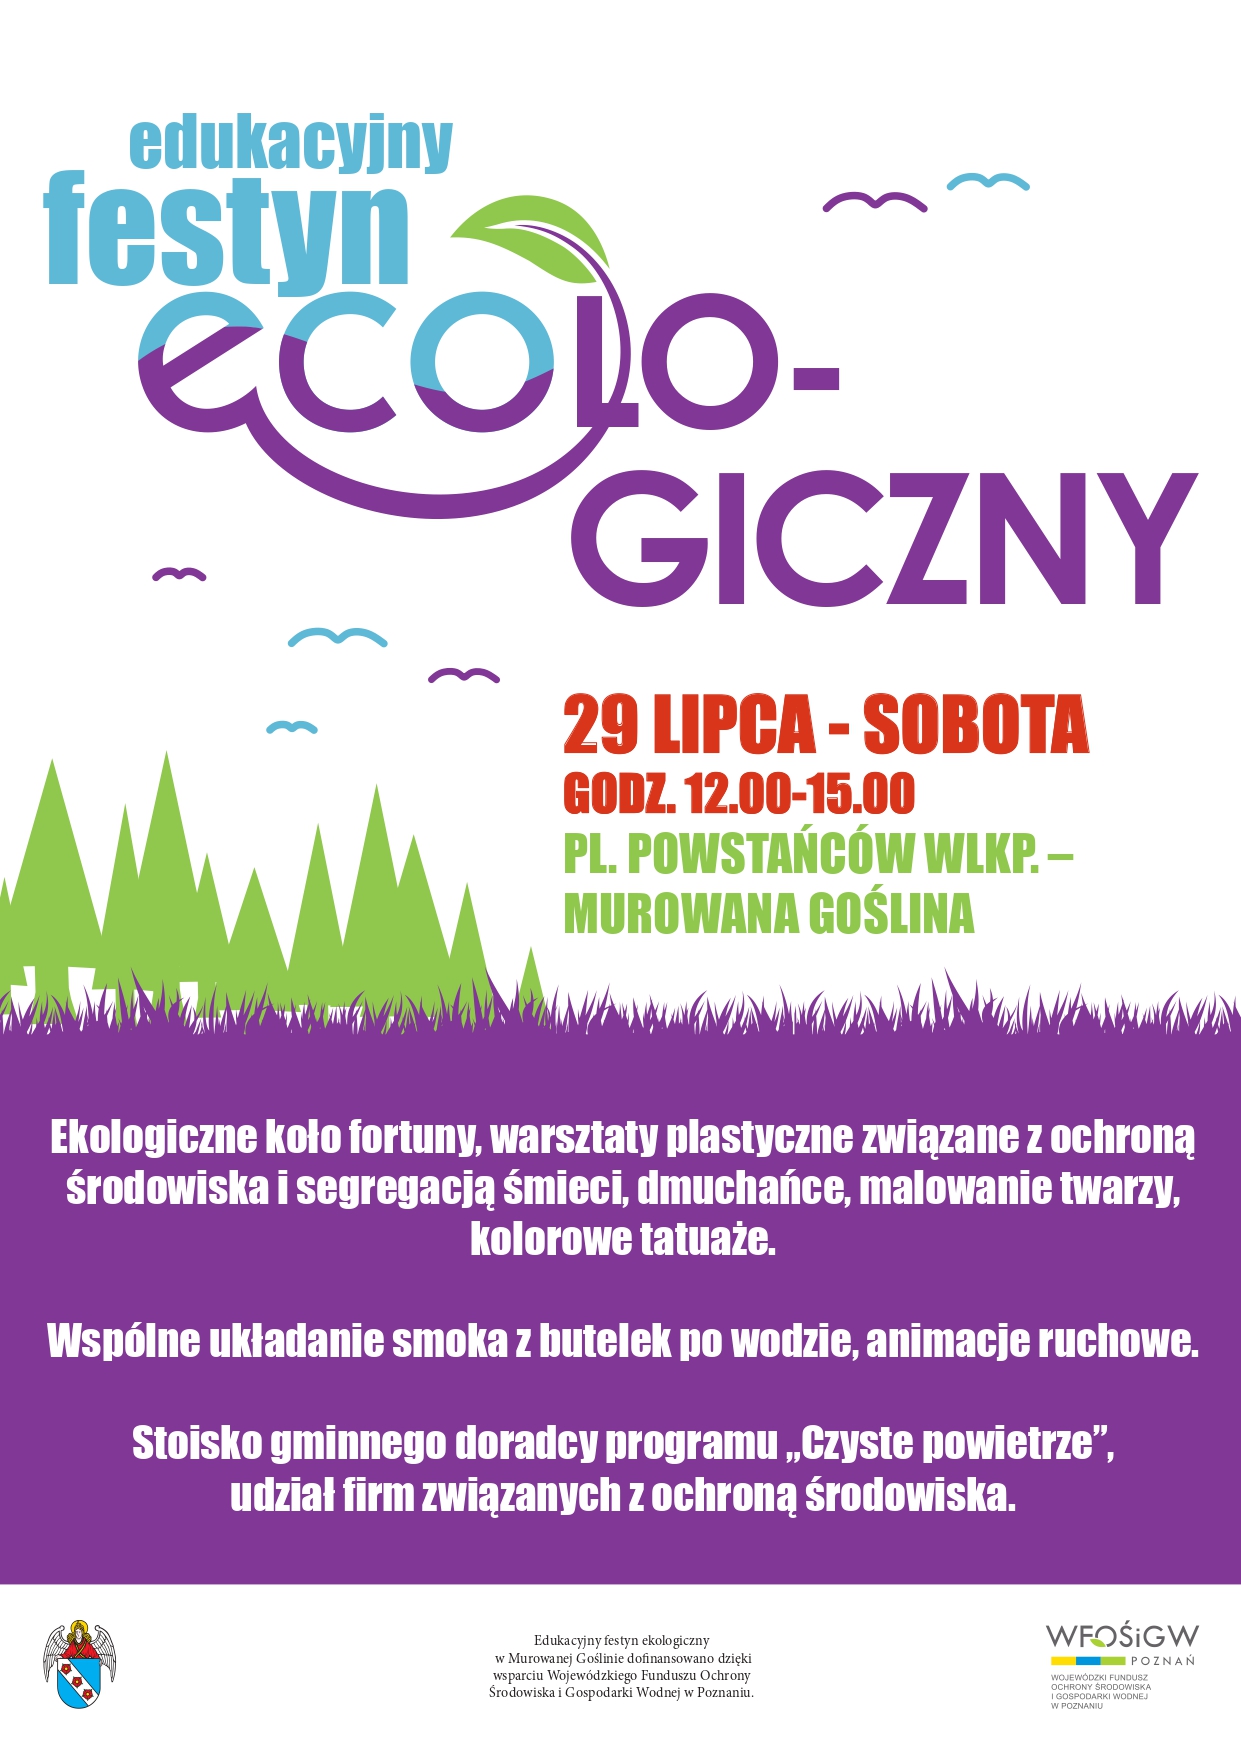 Edukacyjny festyn ECOLO-GICZNY